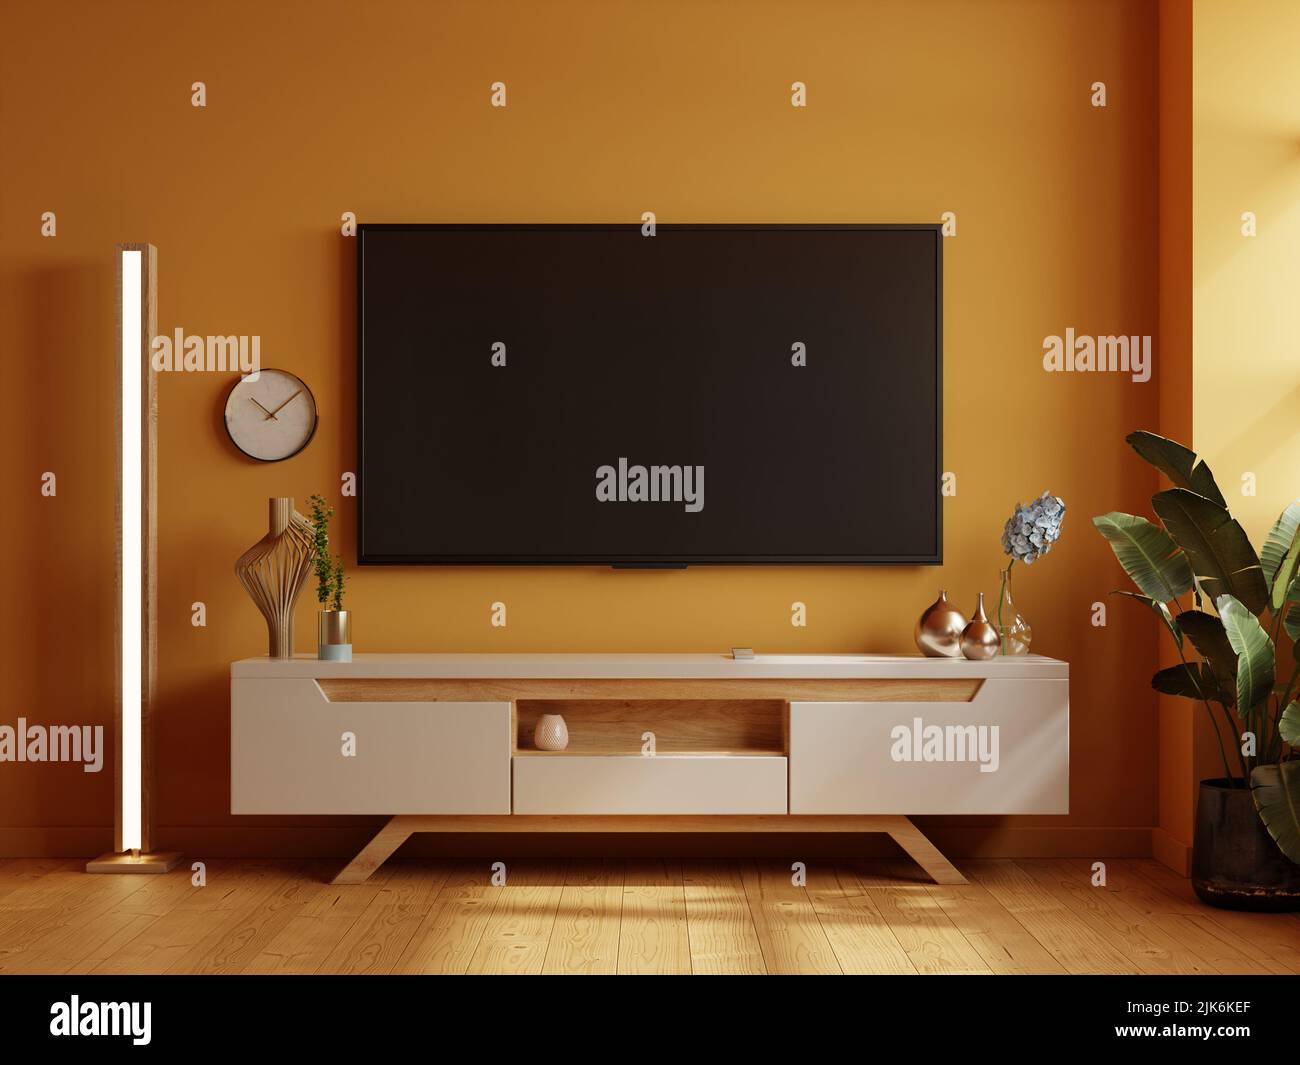 Màu sắc luôn đóng vai trò rất quan trọng trong việc trang trí nội thất. Nếu bạn muốn tạo nên một phòng TV vừa ấm cúng vừa tràn đầy sự tươi sáng, màu vàng sẽ là lựa chọn hoàn hảo. Hãy xem ngay hình ảnh trang trí phòng TV với màu vàng để tìm kiếm nguồn cảm hứng trang trí cho ngôi nhà của bạn. 